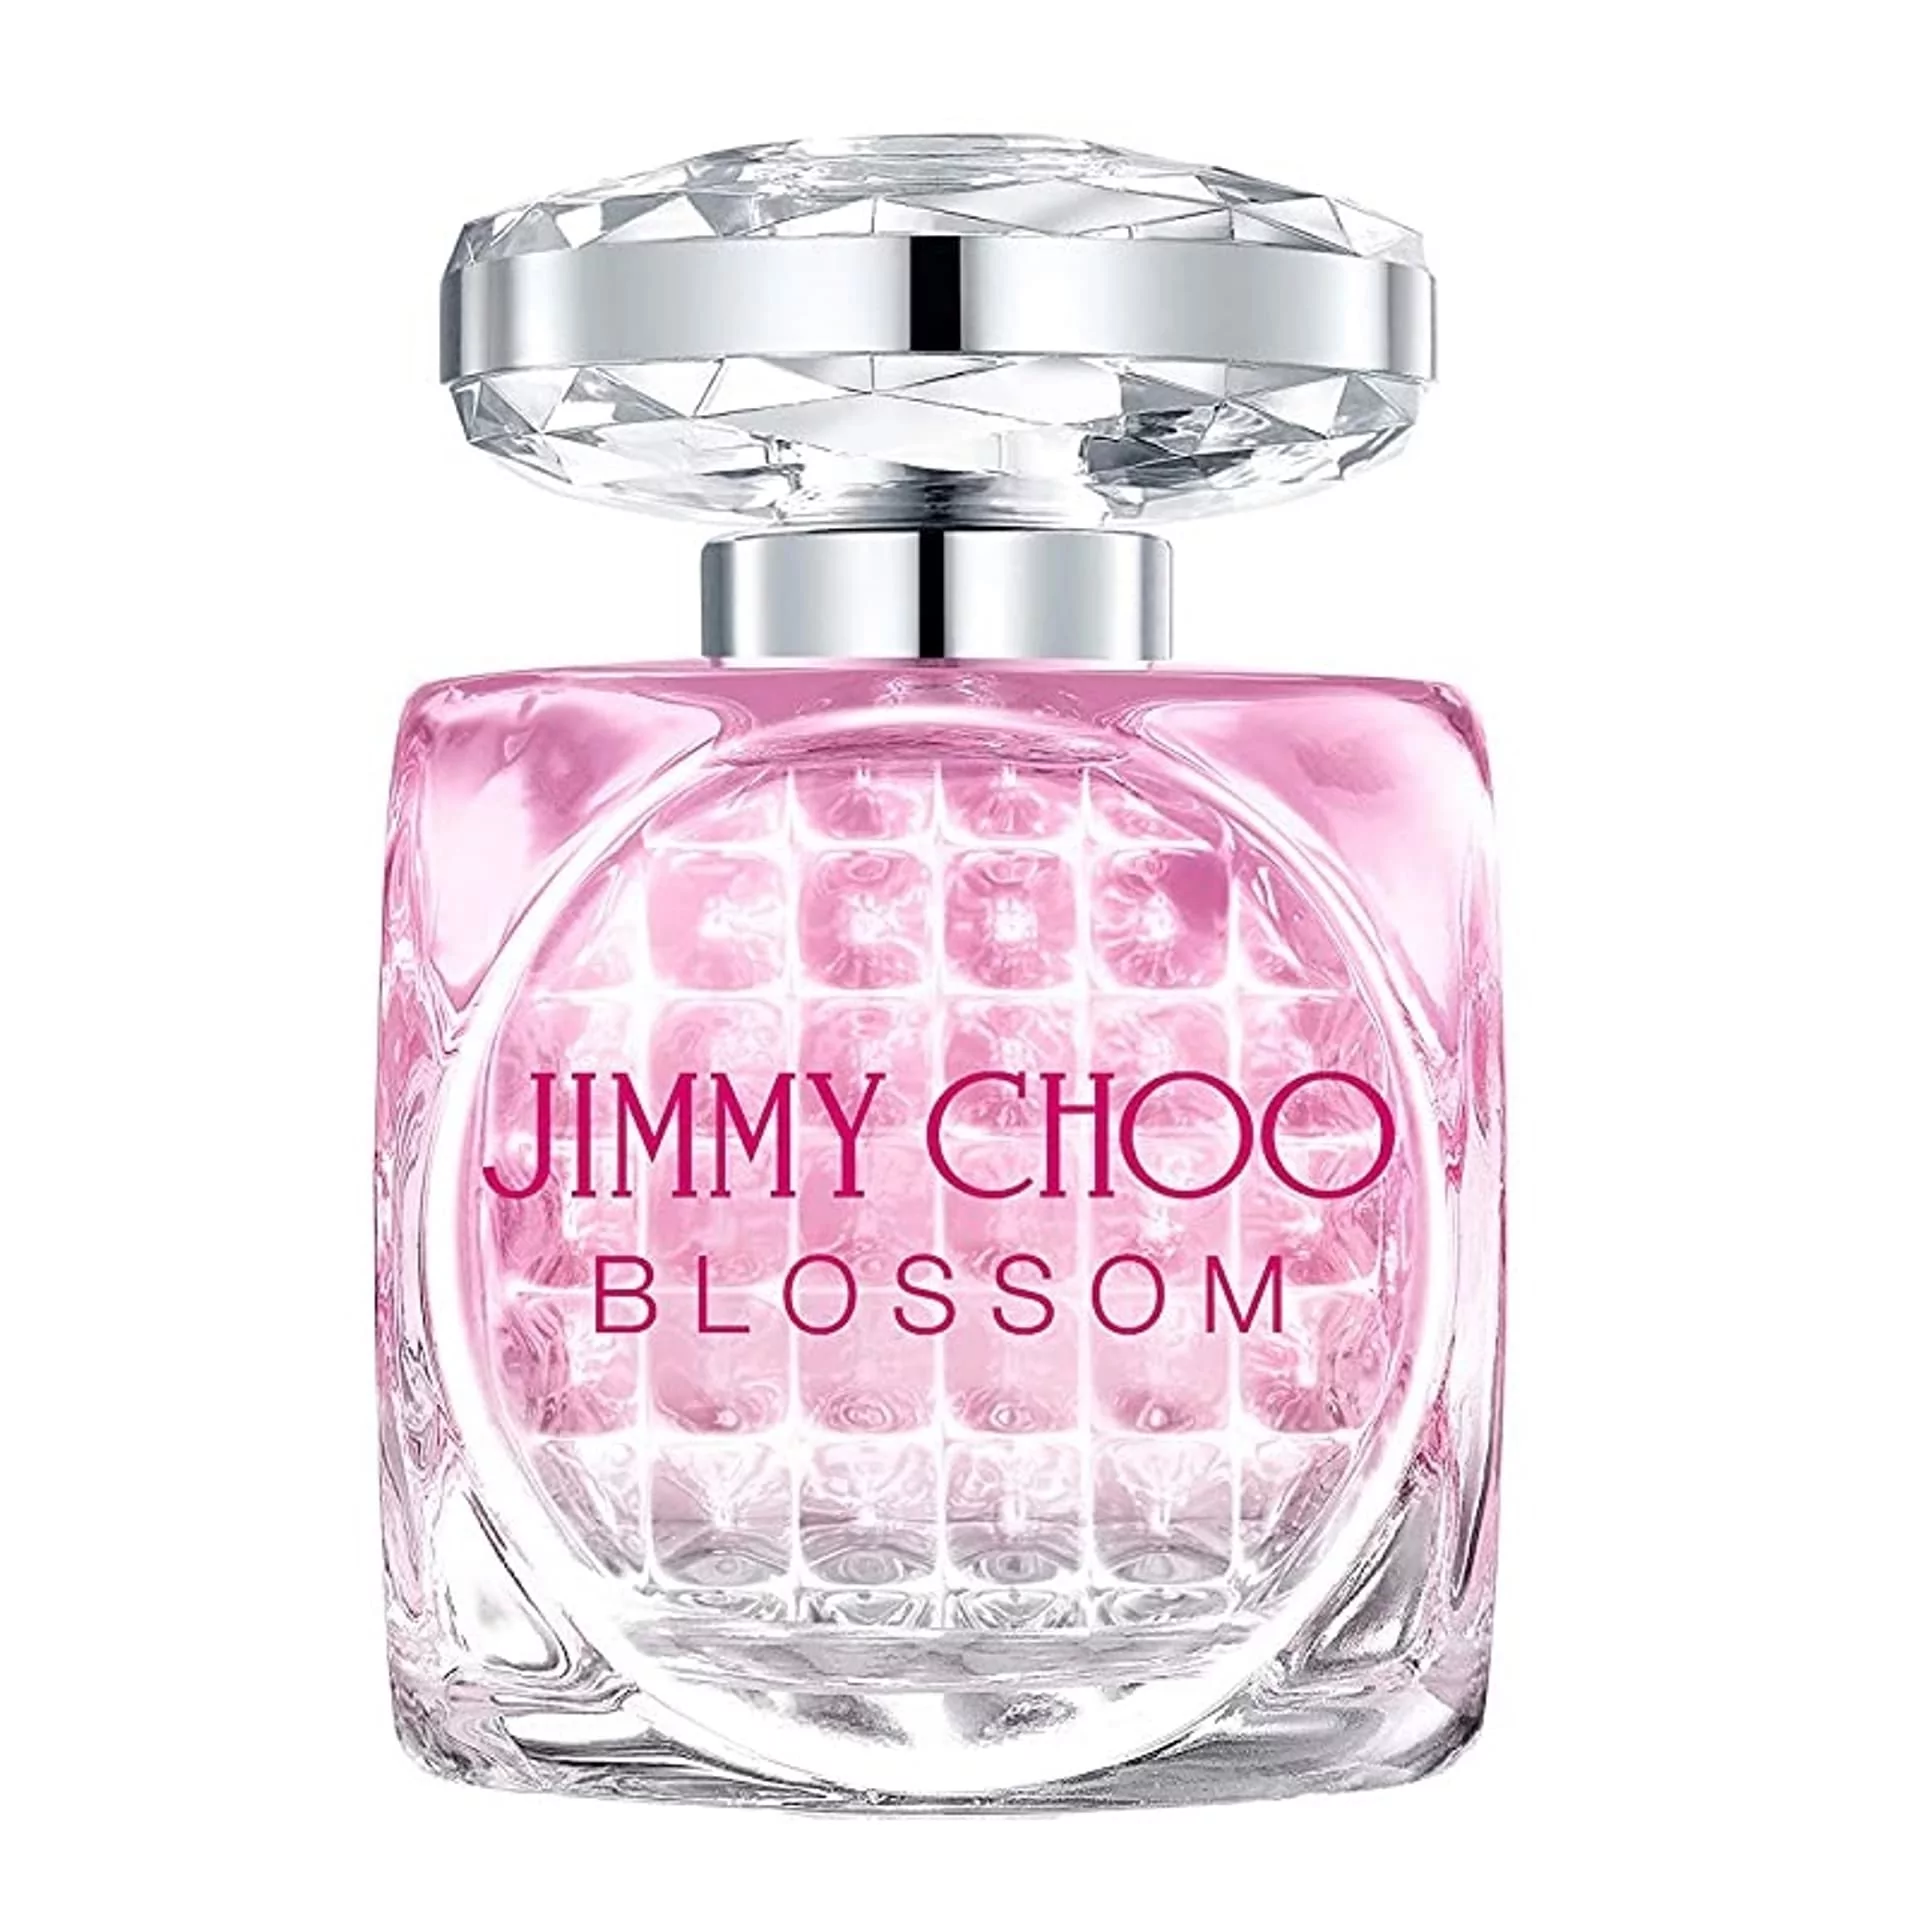 JIMMY CHOO Blossom Special Edition EDP spray 60ml